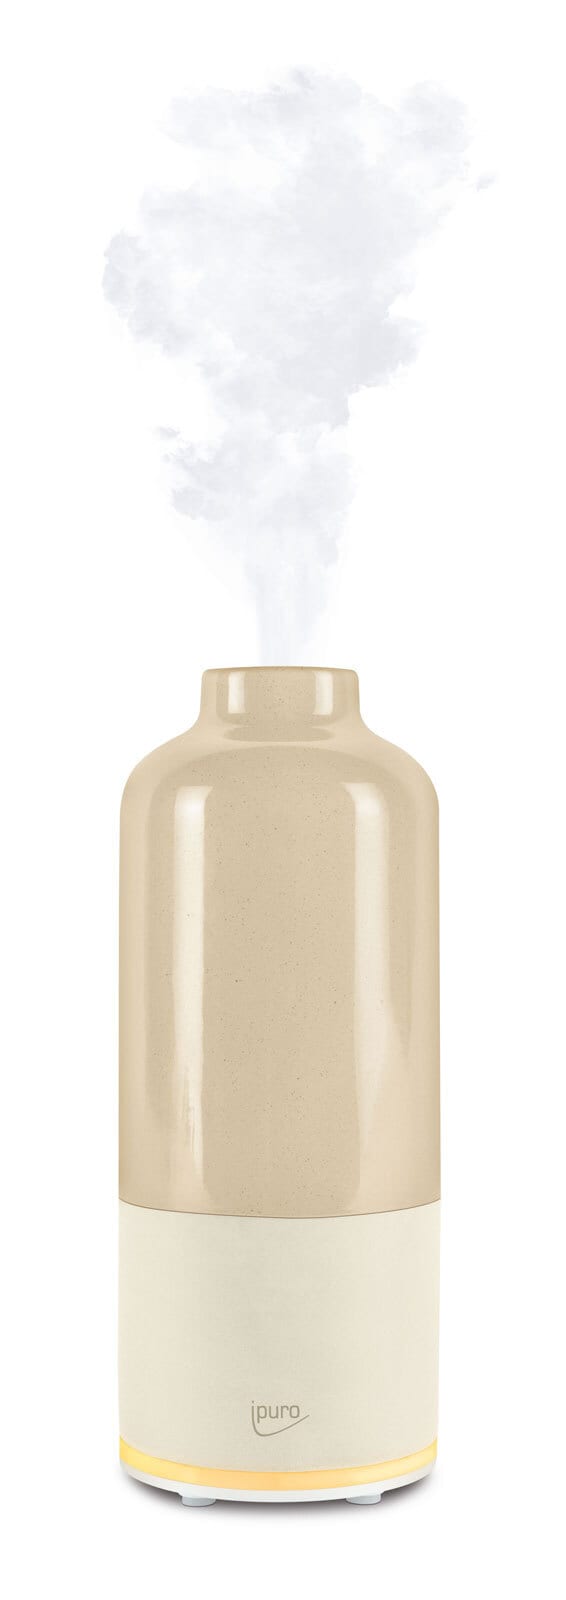 ipuro elektrischer ´Raumduft-Diffuser Flasche AIR SONIC beige